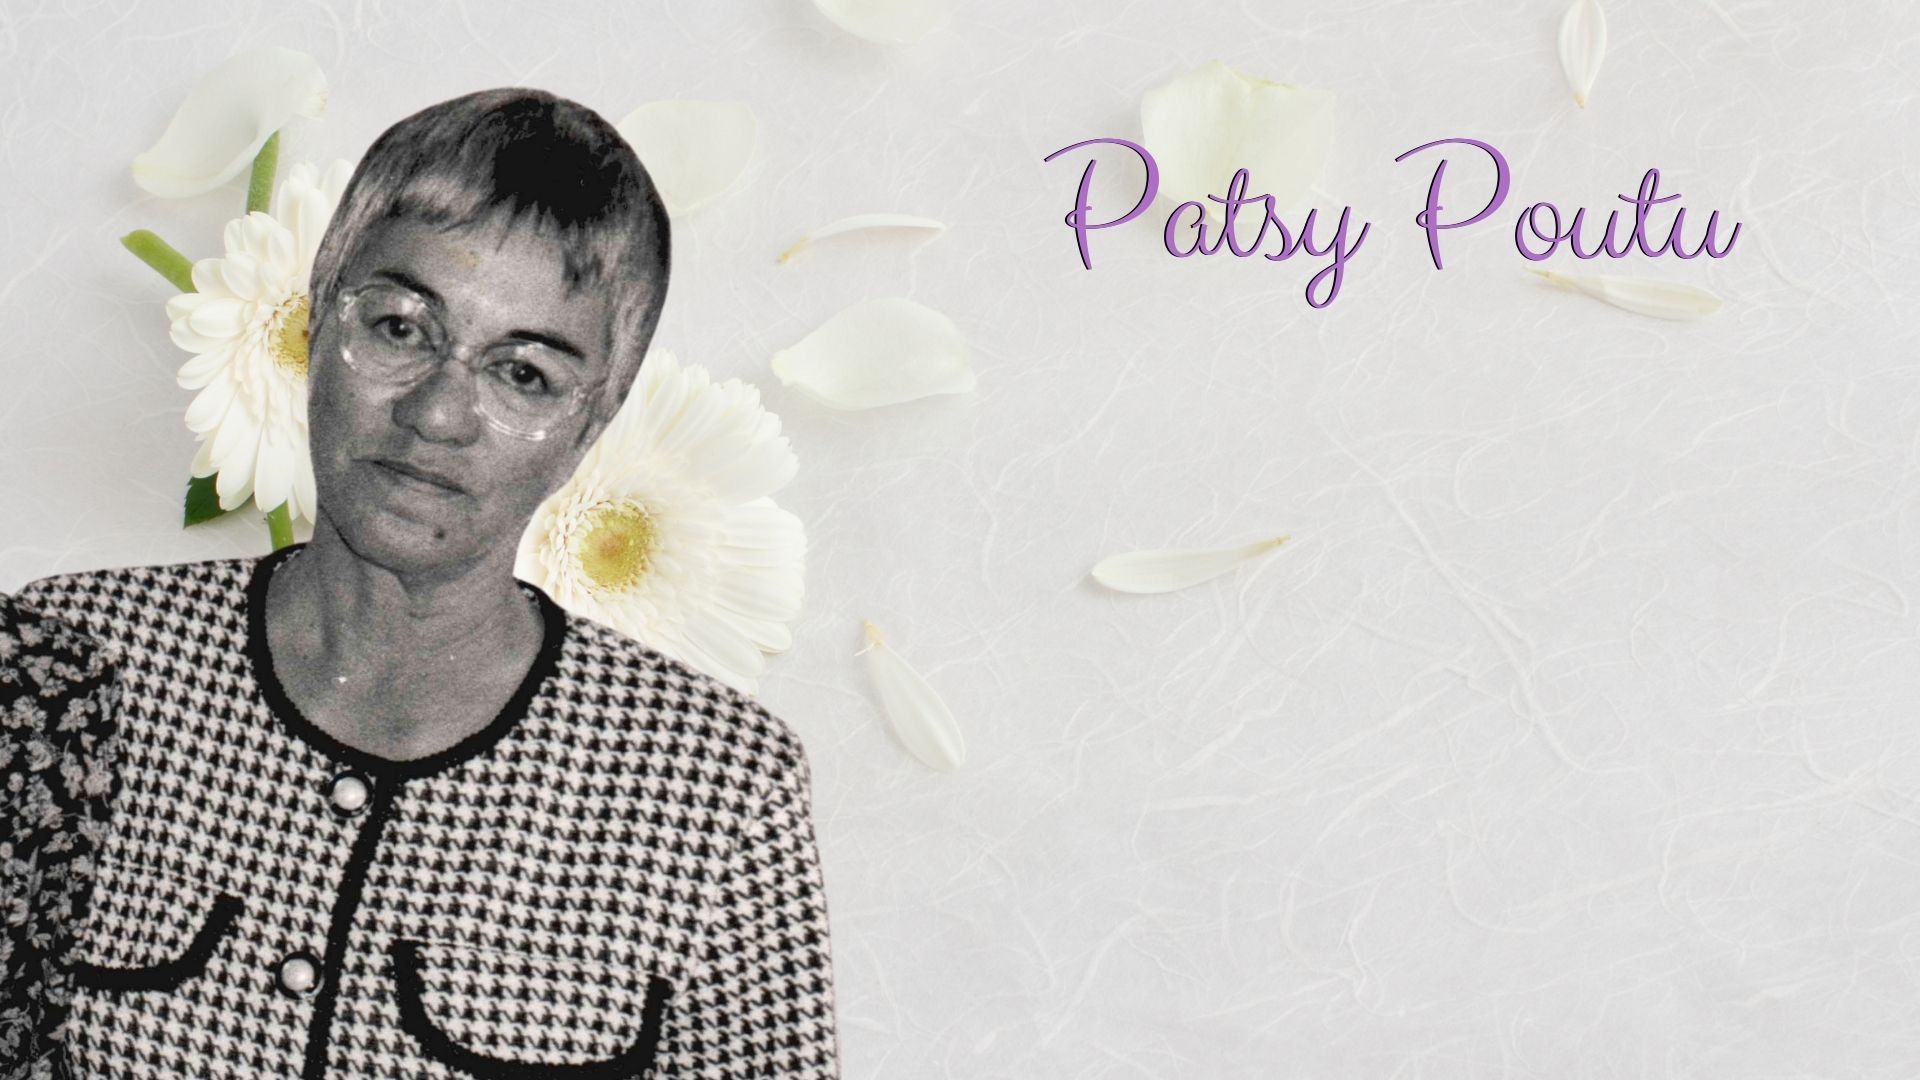 Patsy Poutu